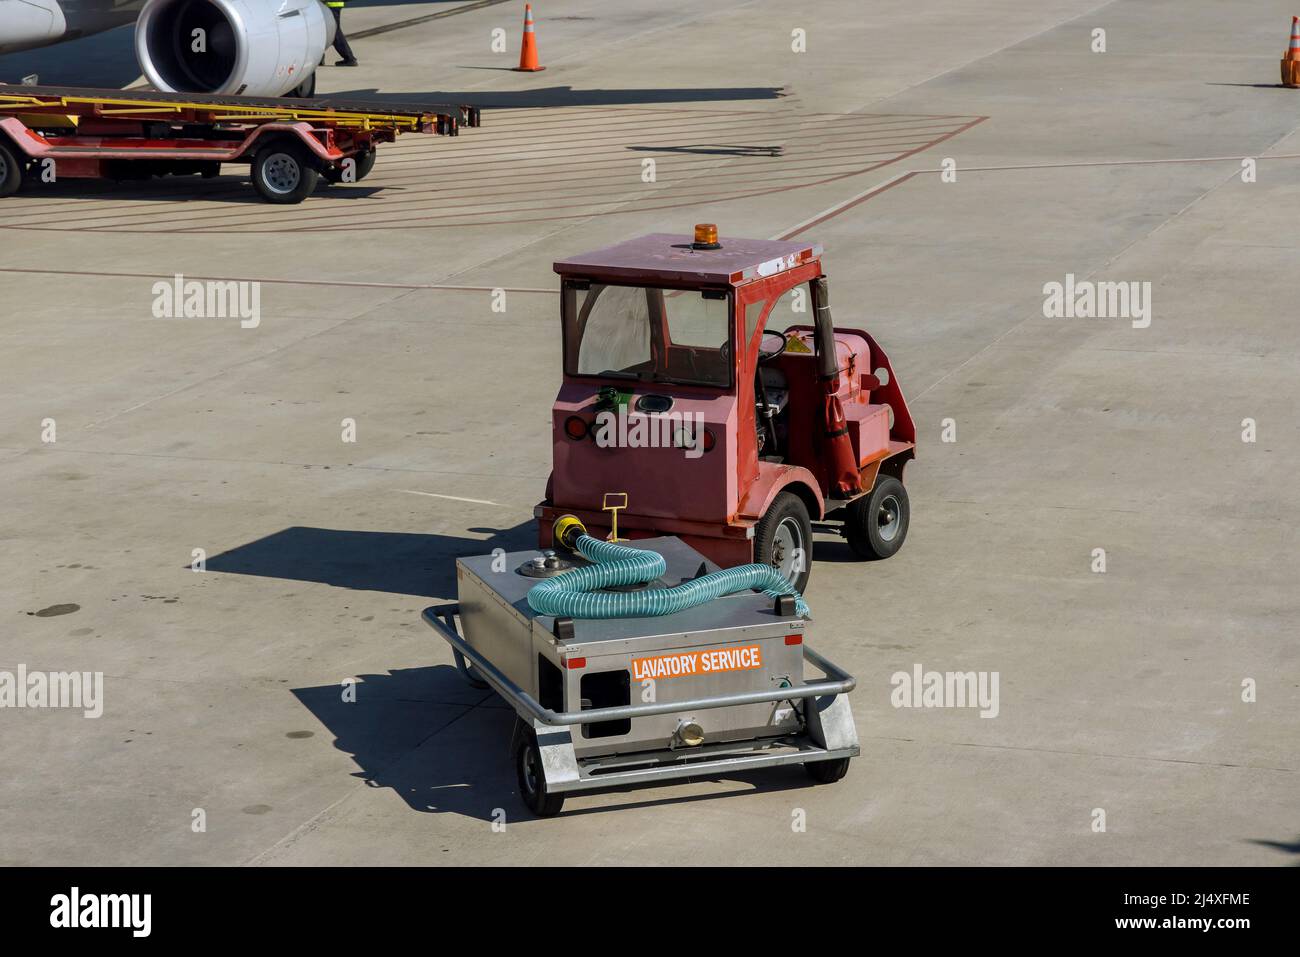 Service de toilettes l'avion à l'aéroport Banque D'Images